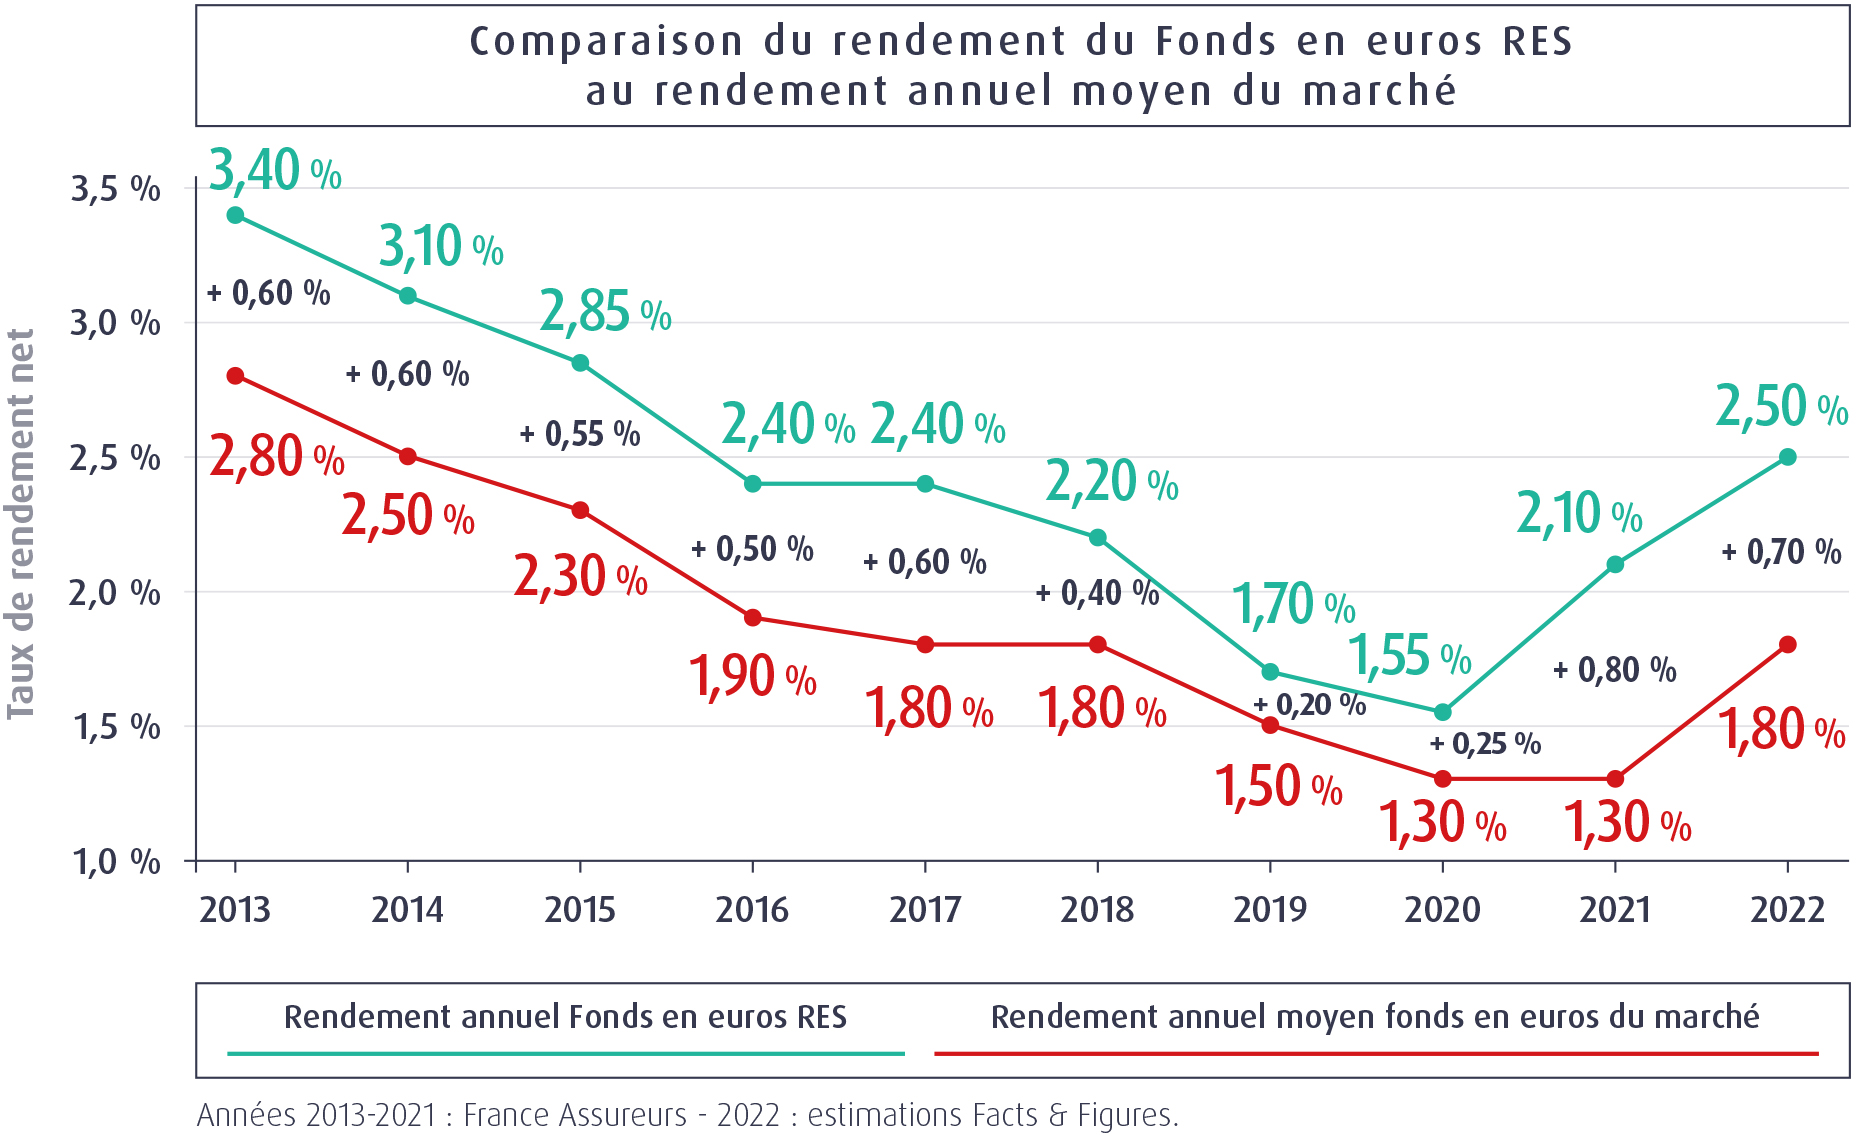 Comparaison du rendement du Fonds en euros RES 2022 - MACSF